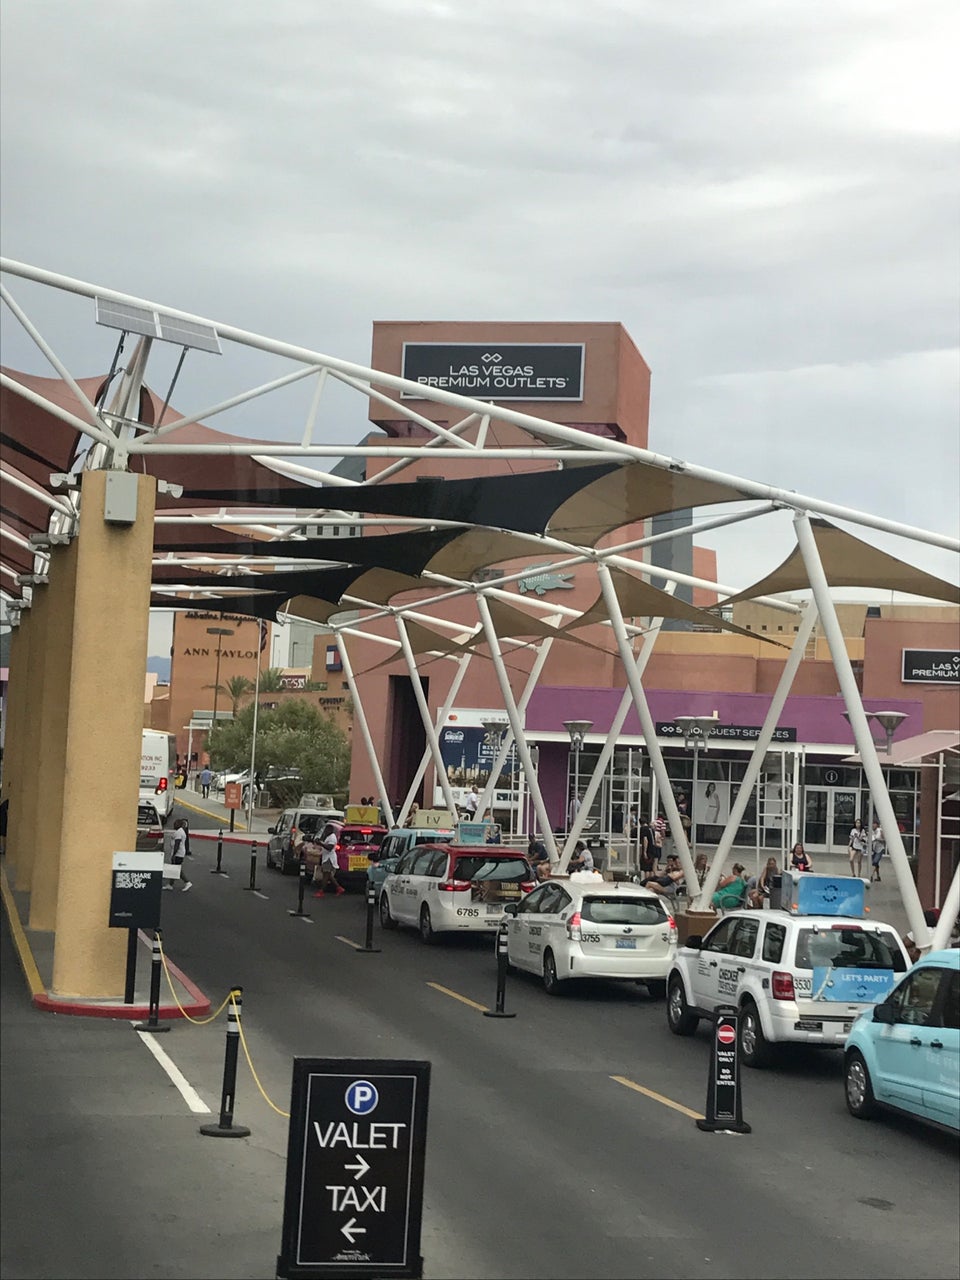 Las Vegas Premium Outlets in Las Vegas: 3 reviews and 8 photos